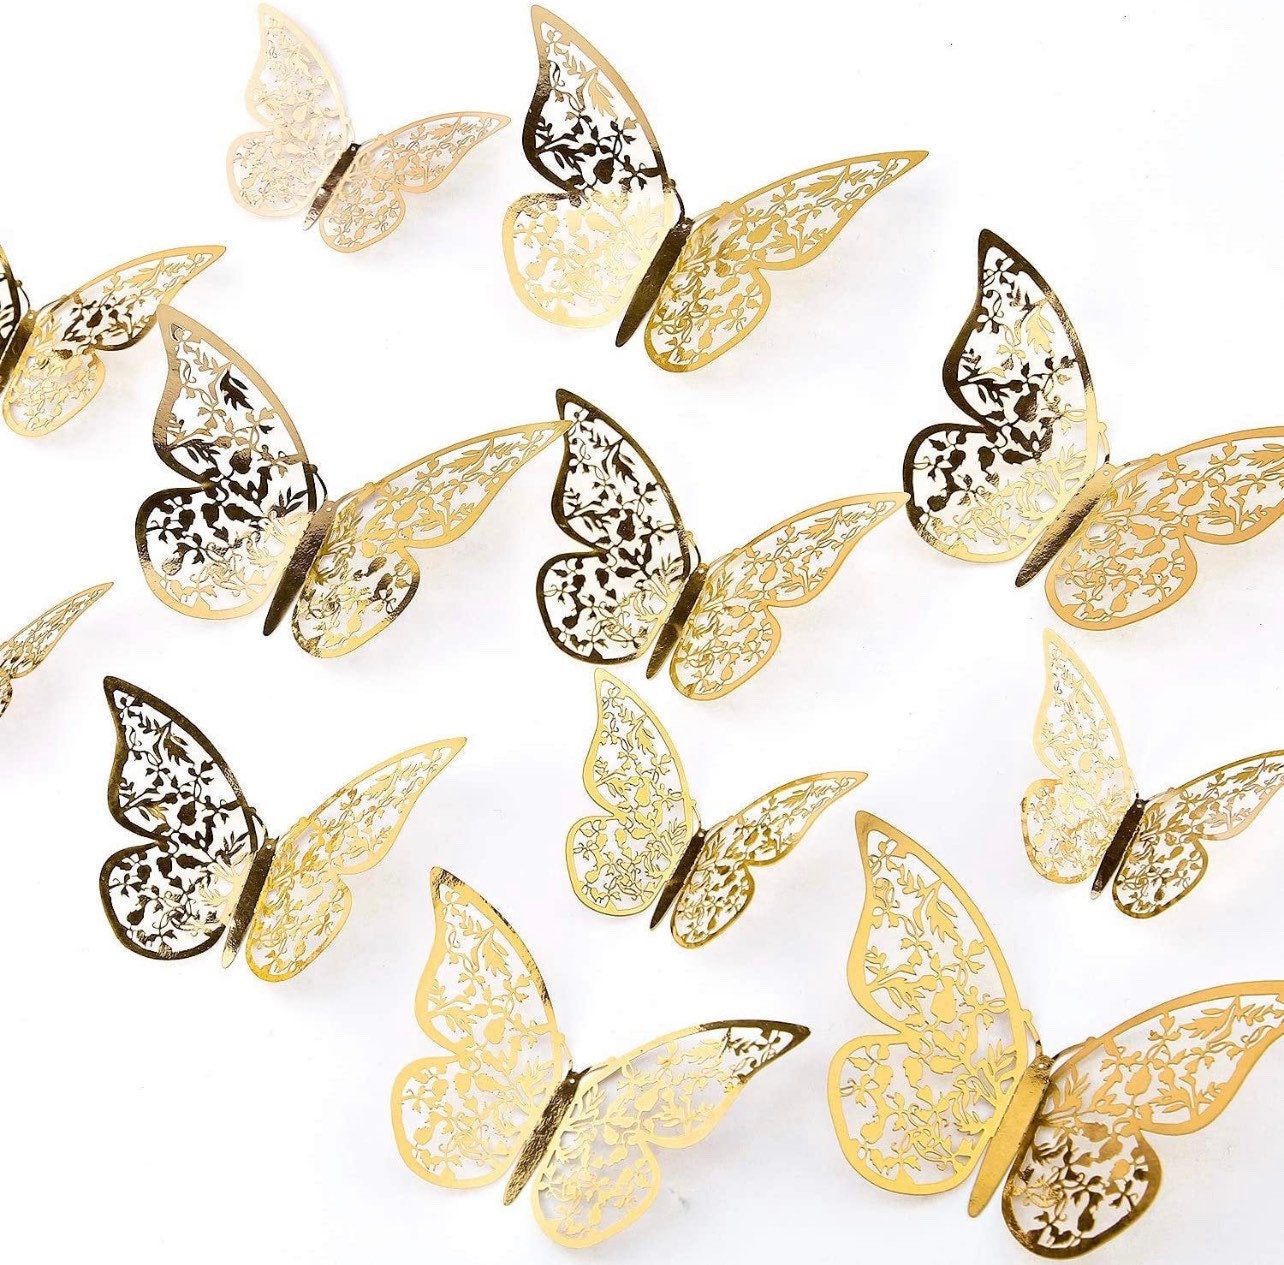 Gold Butterflies Wall Decorations Set - FiveSeasonStuff